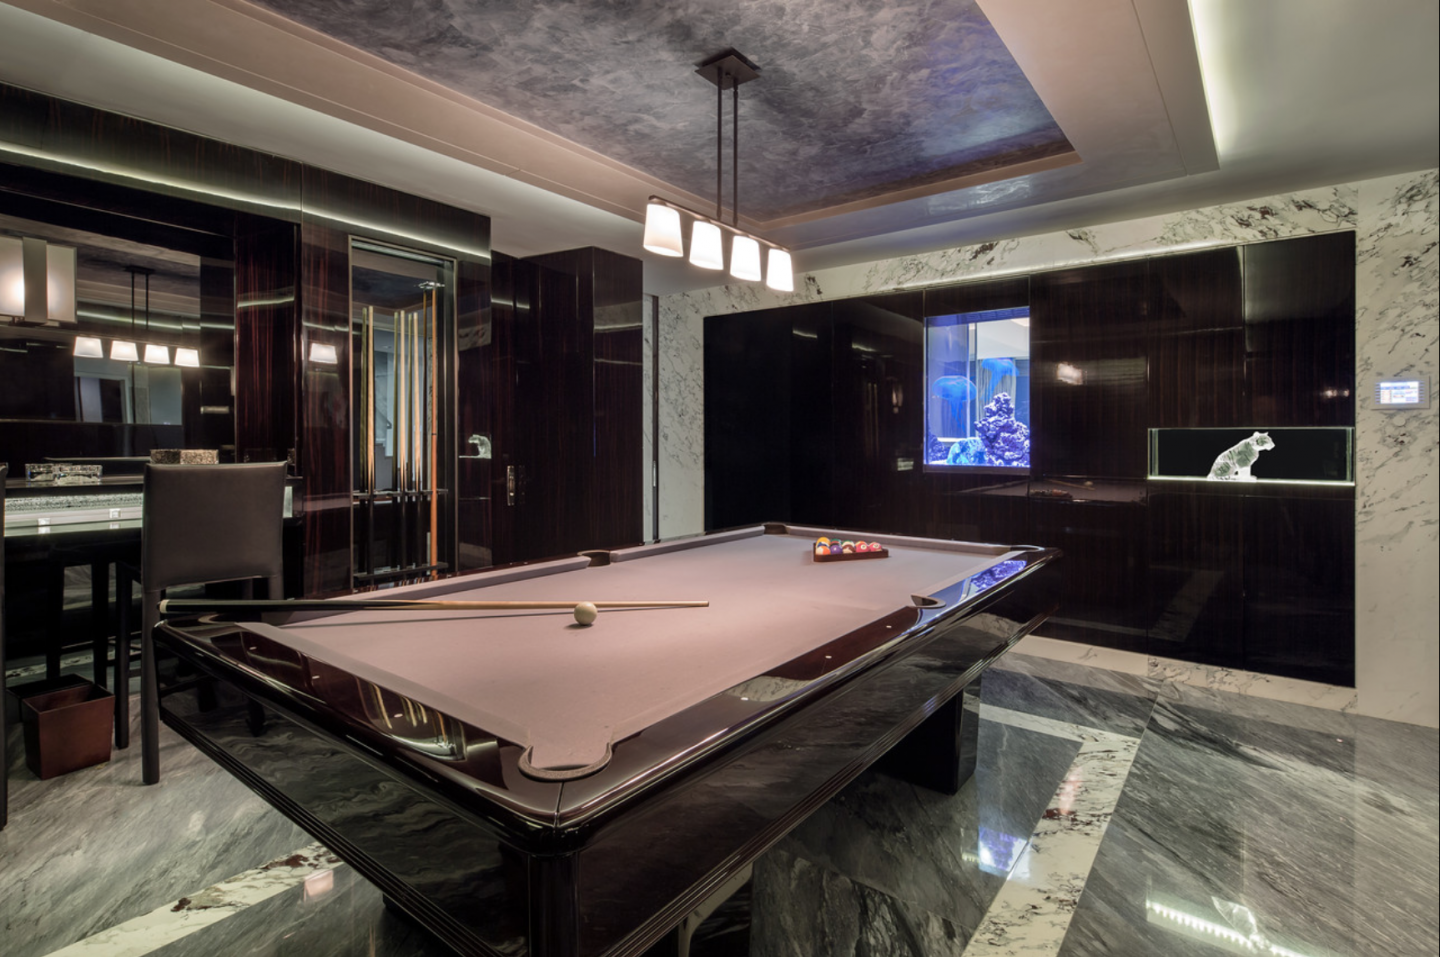 Billiards room with Calcutta built-in saltwater aquarium.